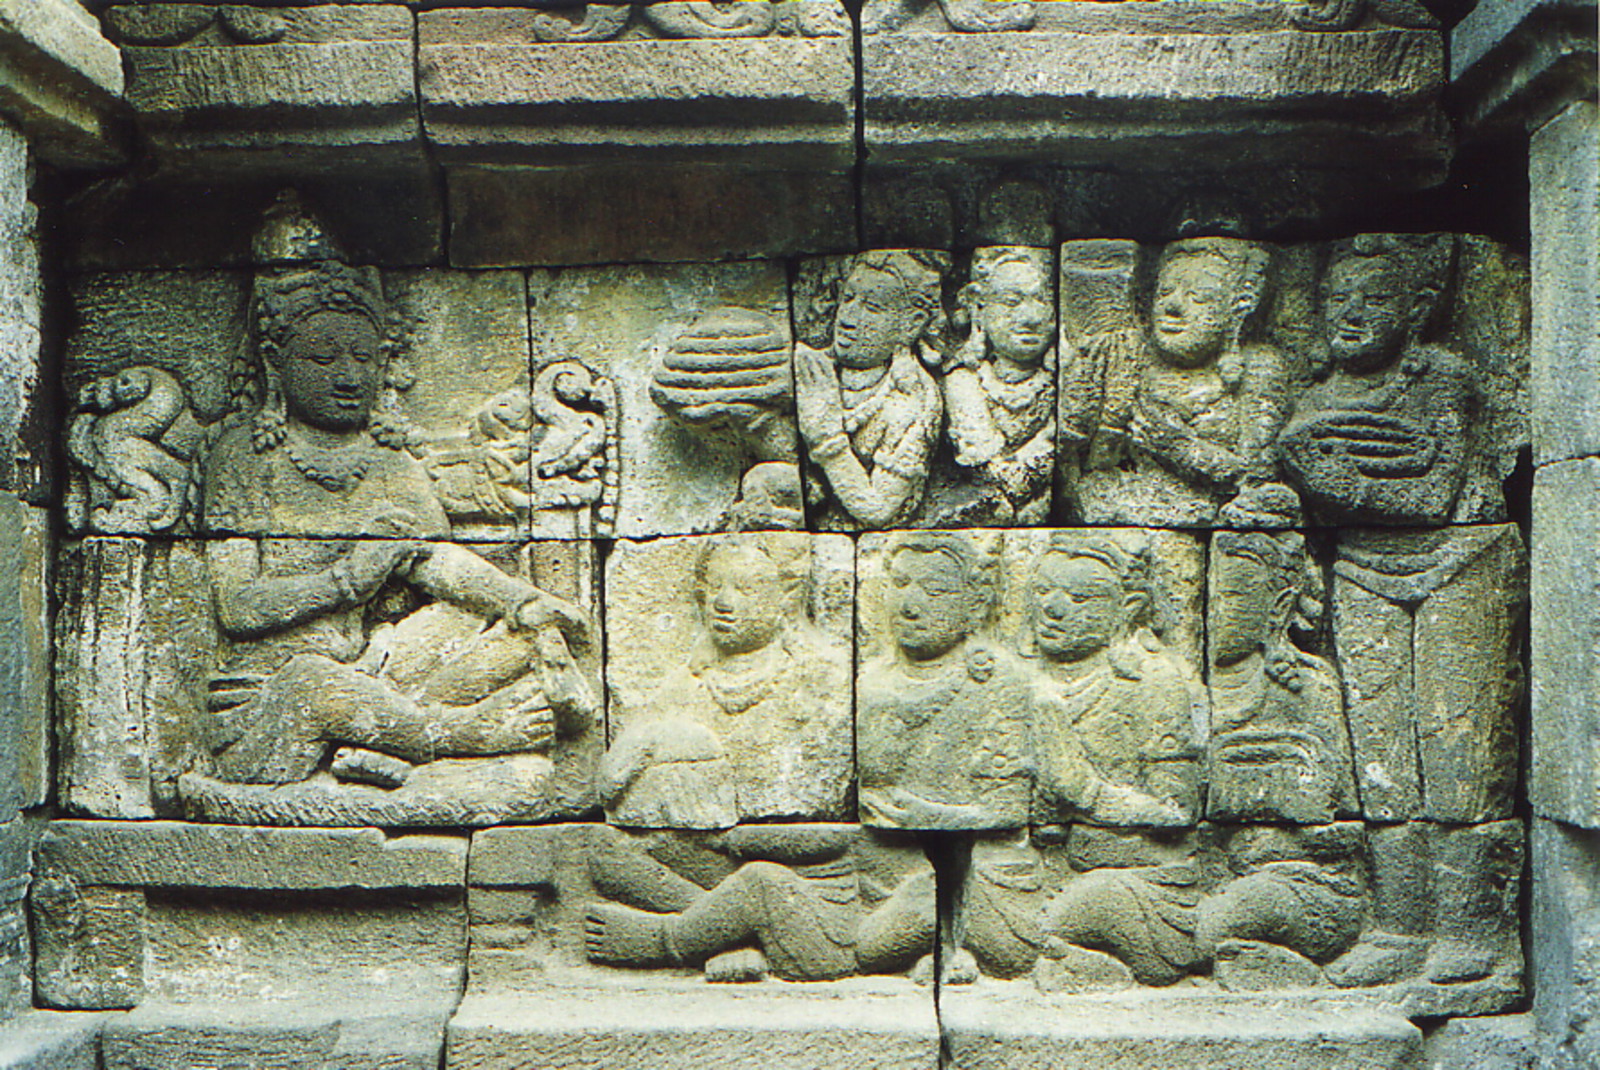 The reliefs of Borobudur